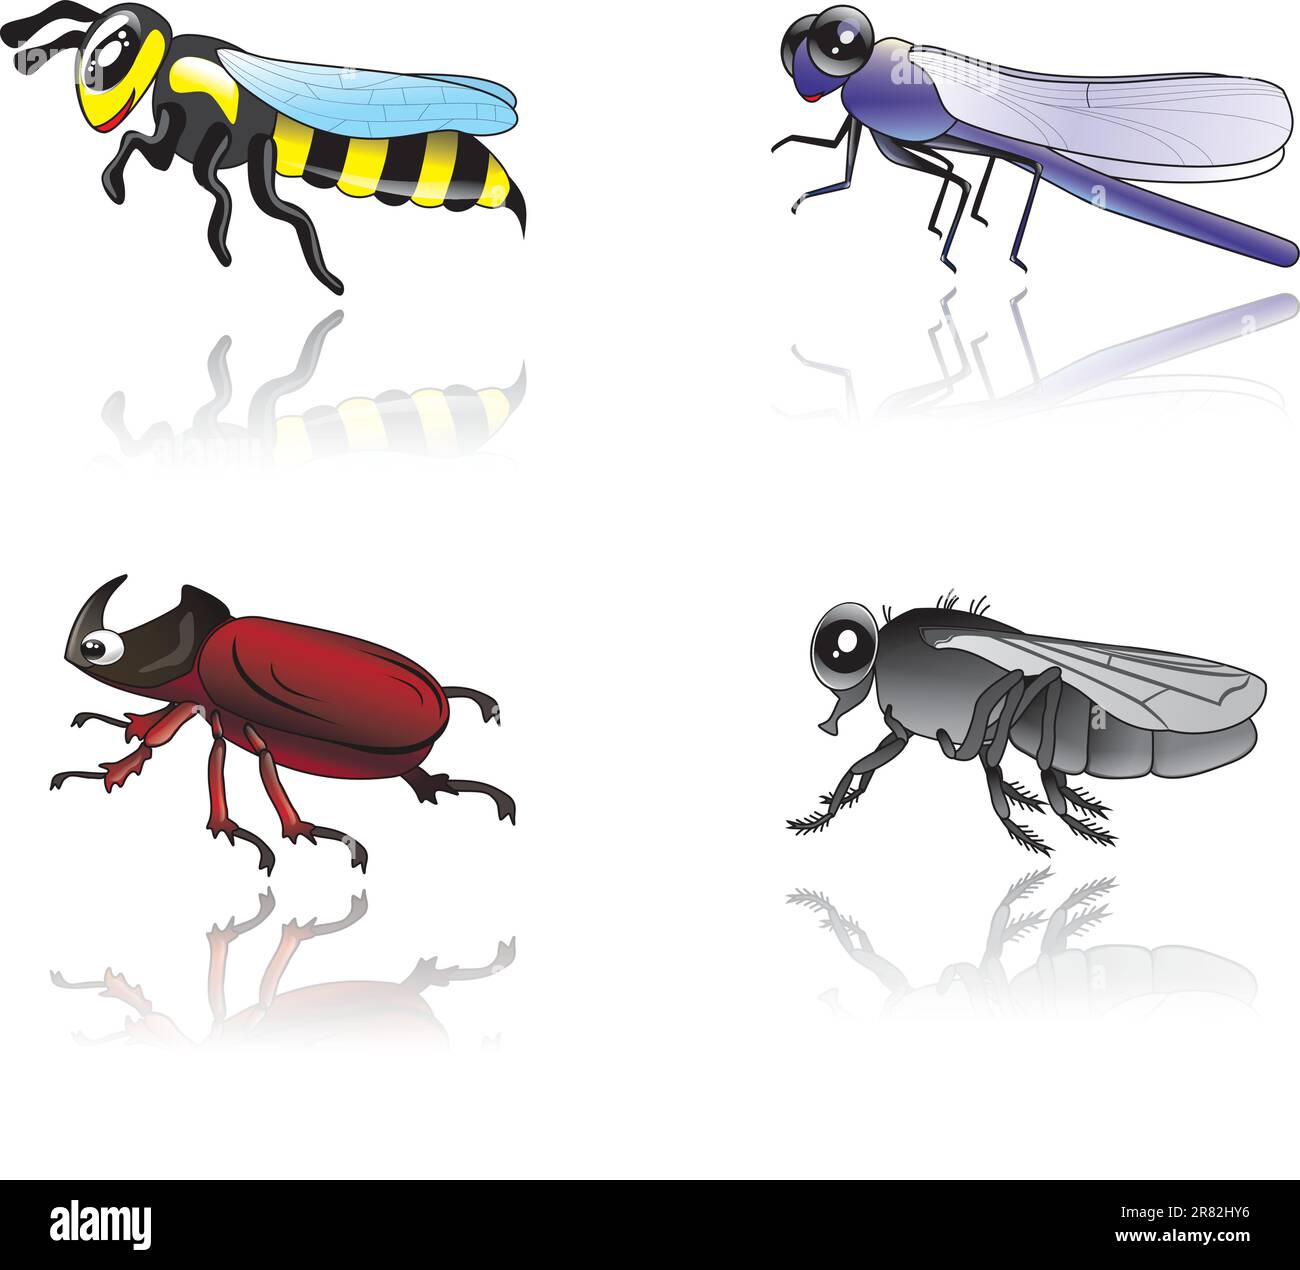 jolie illustration isolée d'insectes babyish drôles Illustration de Vecteur